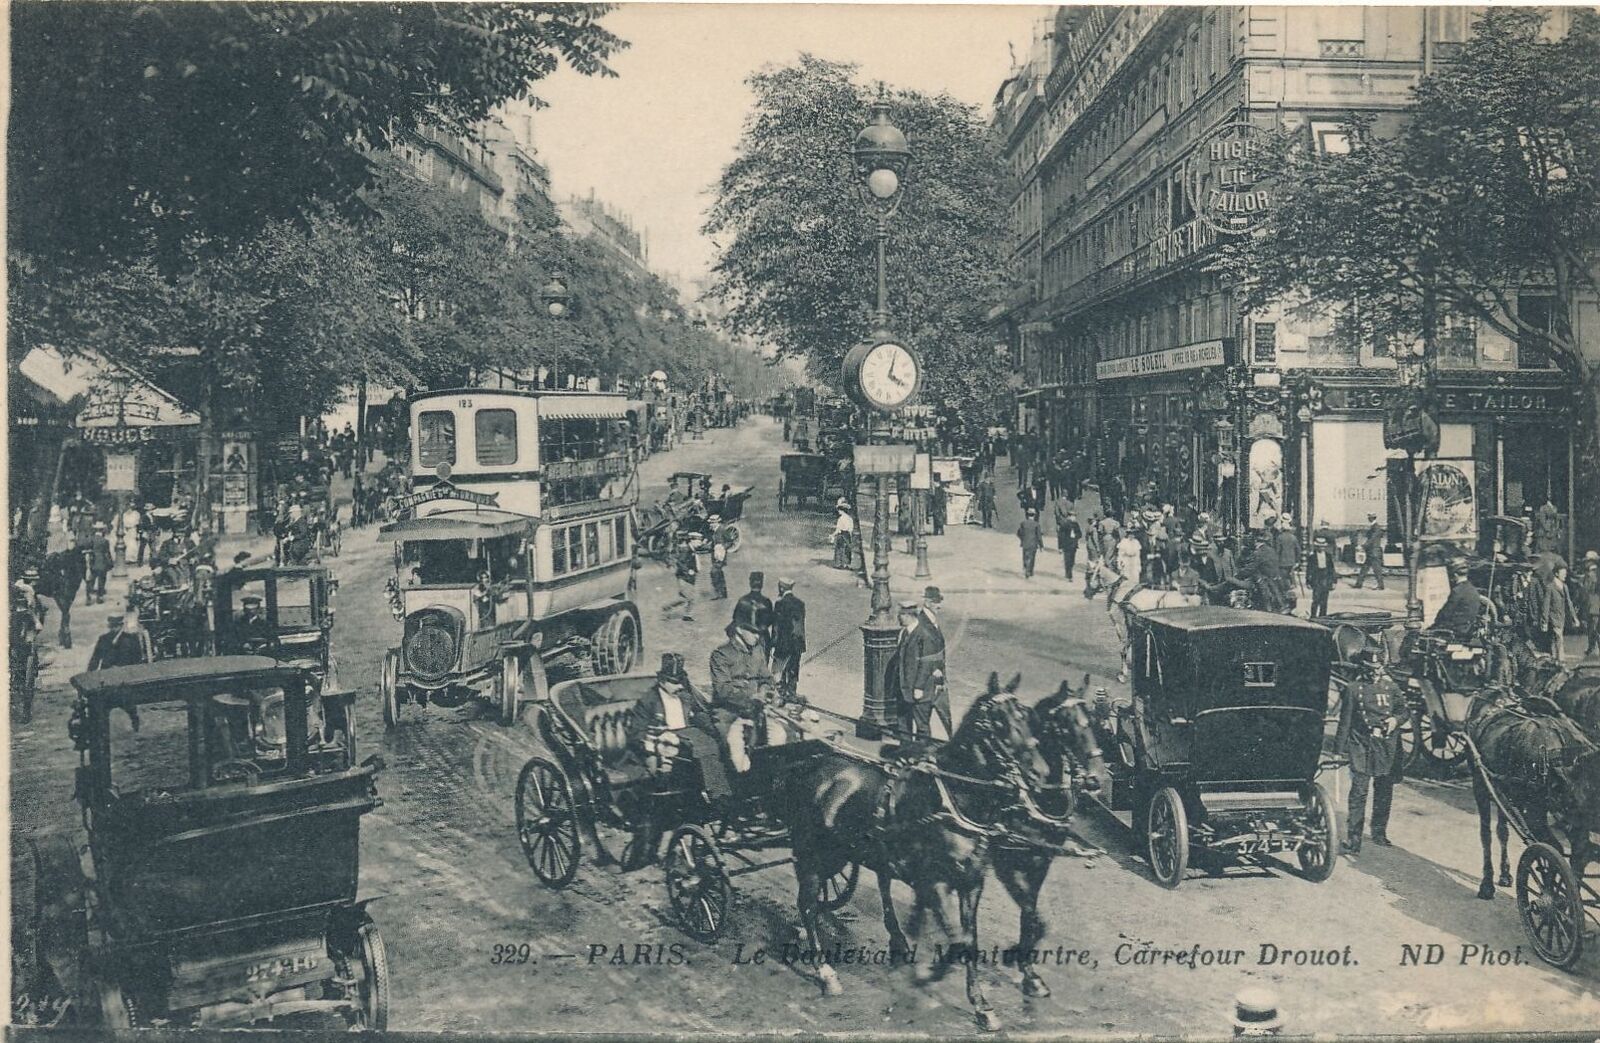 PARIS - Le Boulevard Montmartre Carrefour Drouot Postcard - France